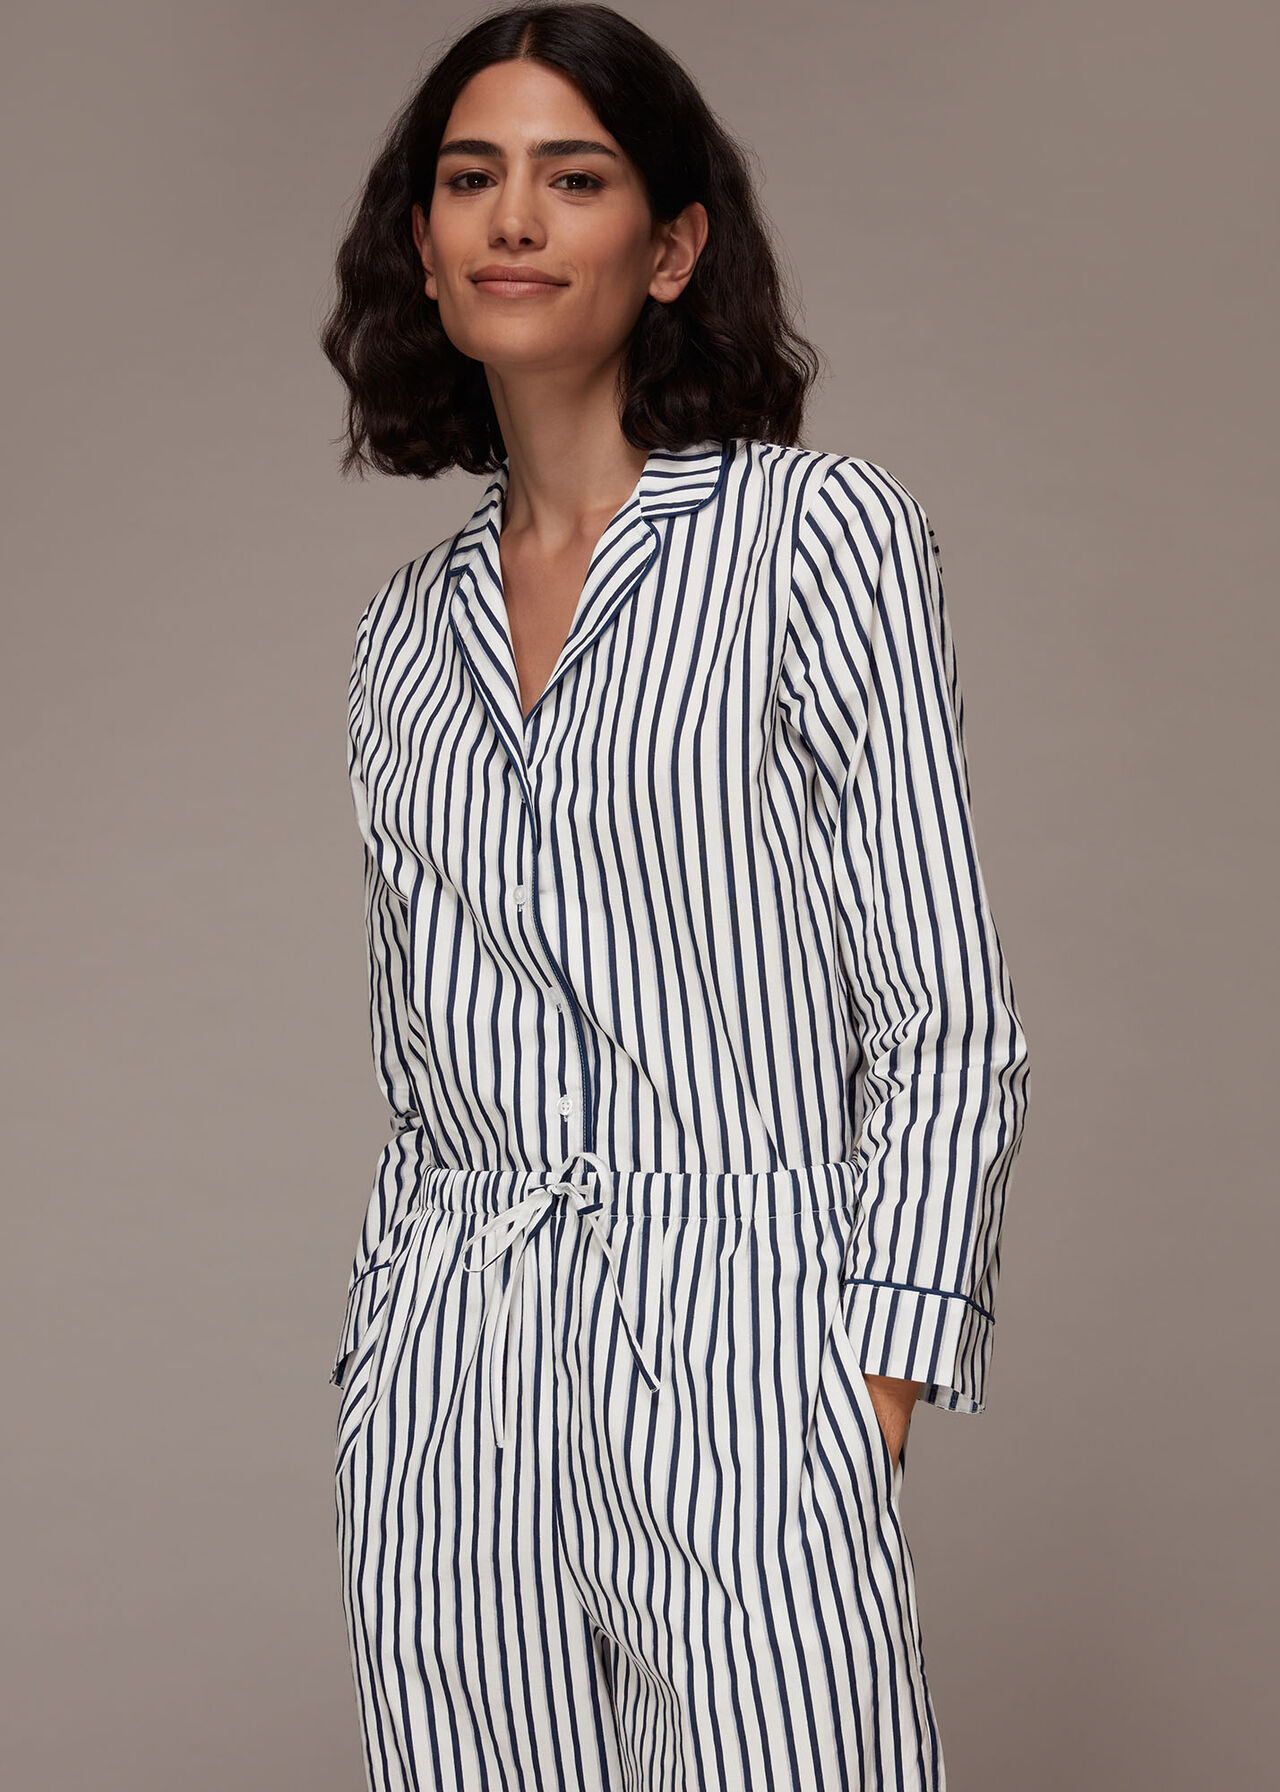 Stripe Pyjamas